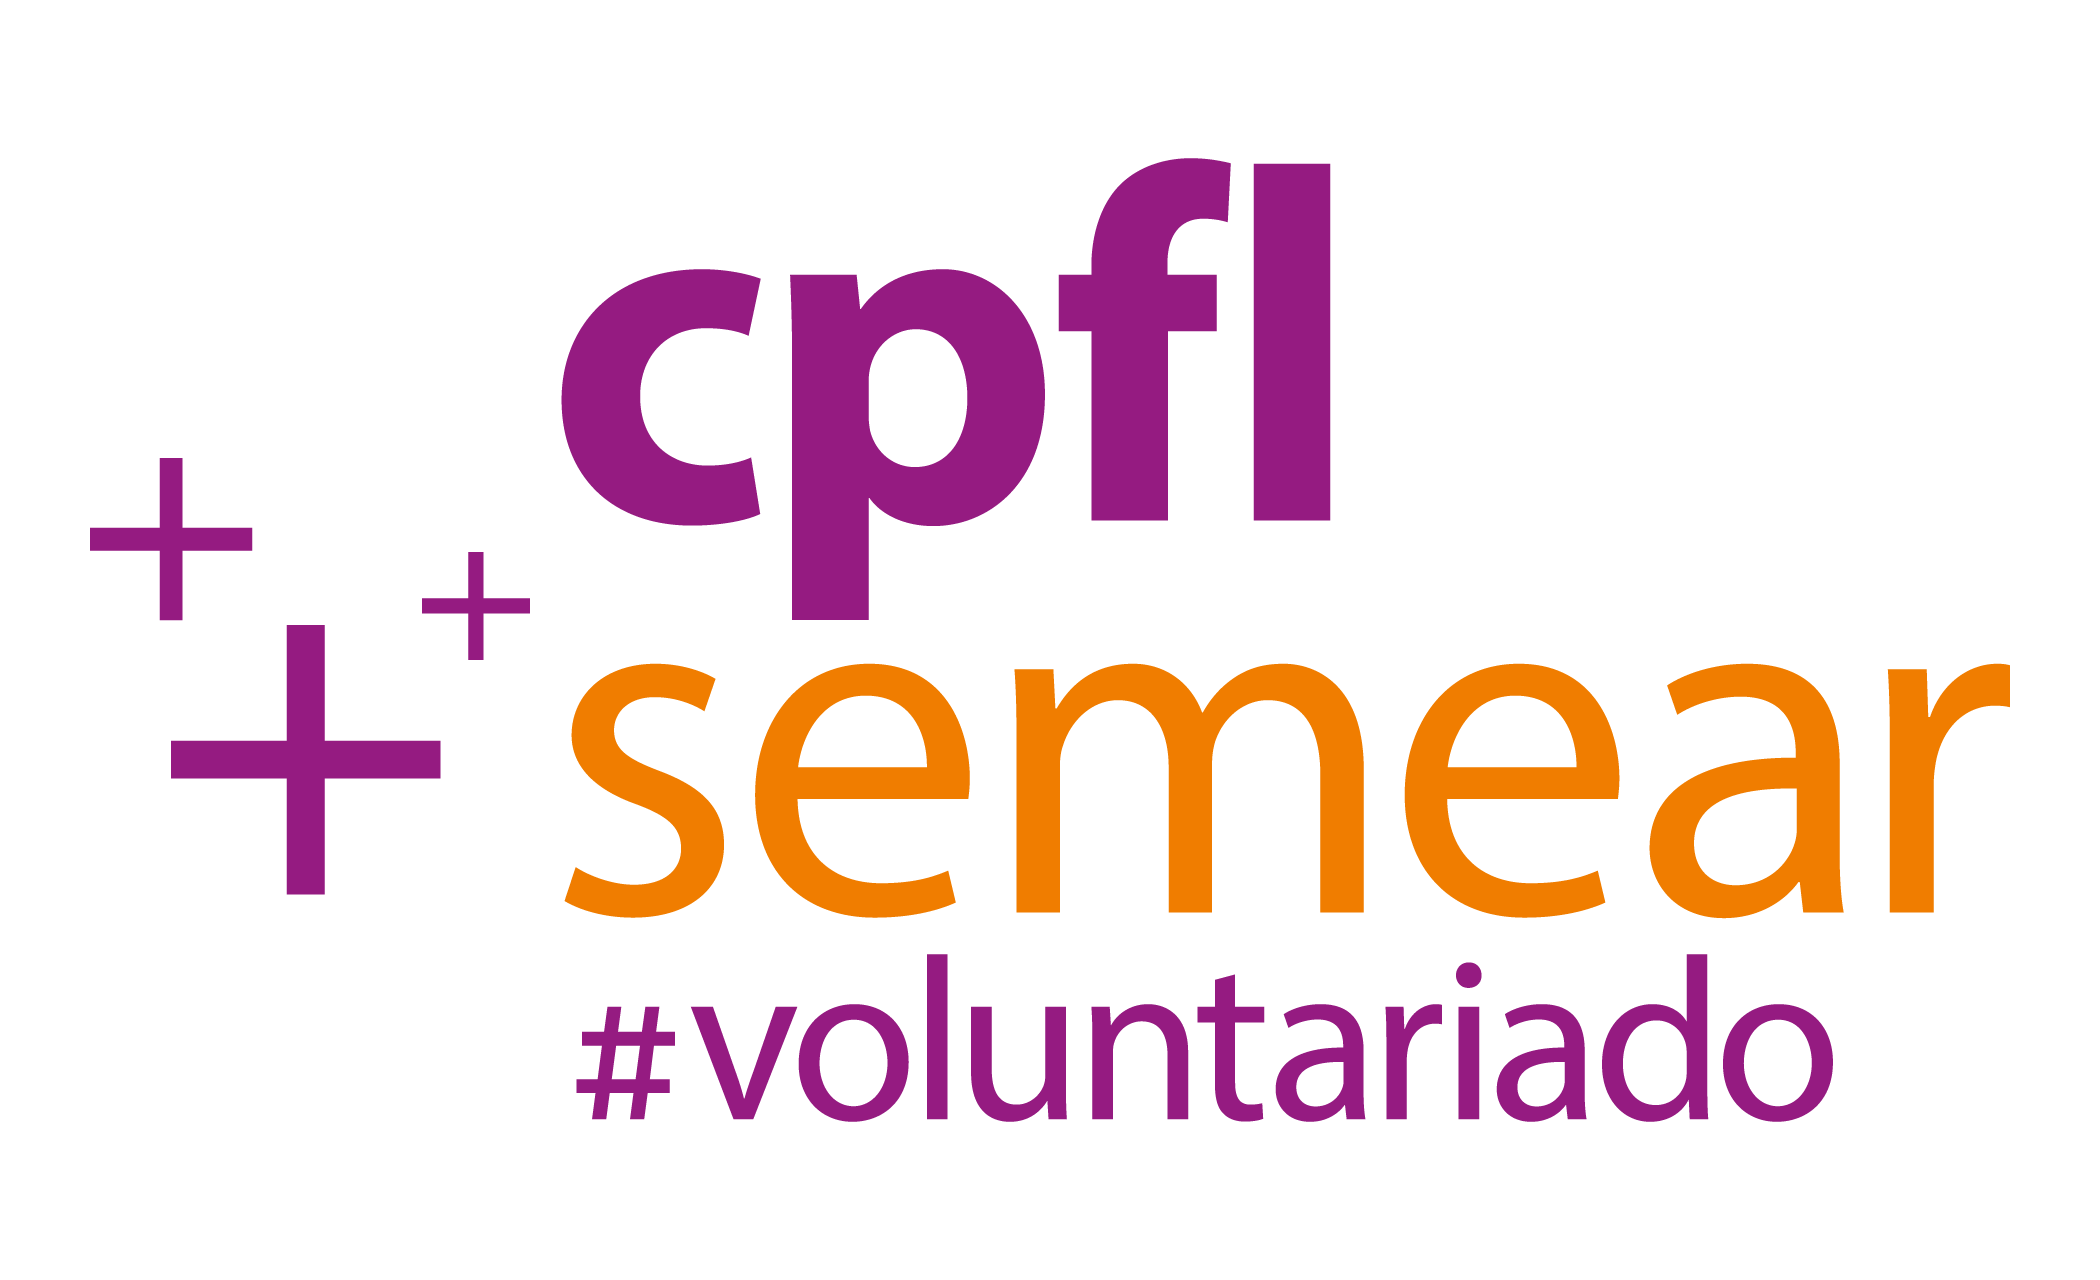 Voluntariado CPFL